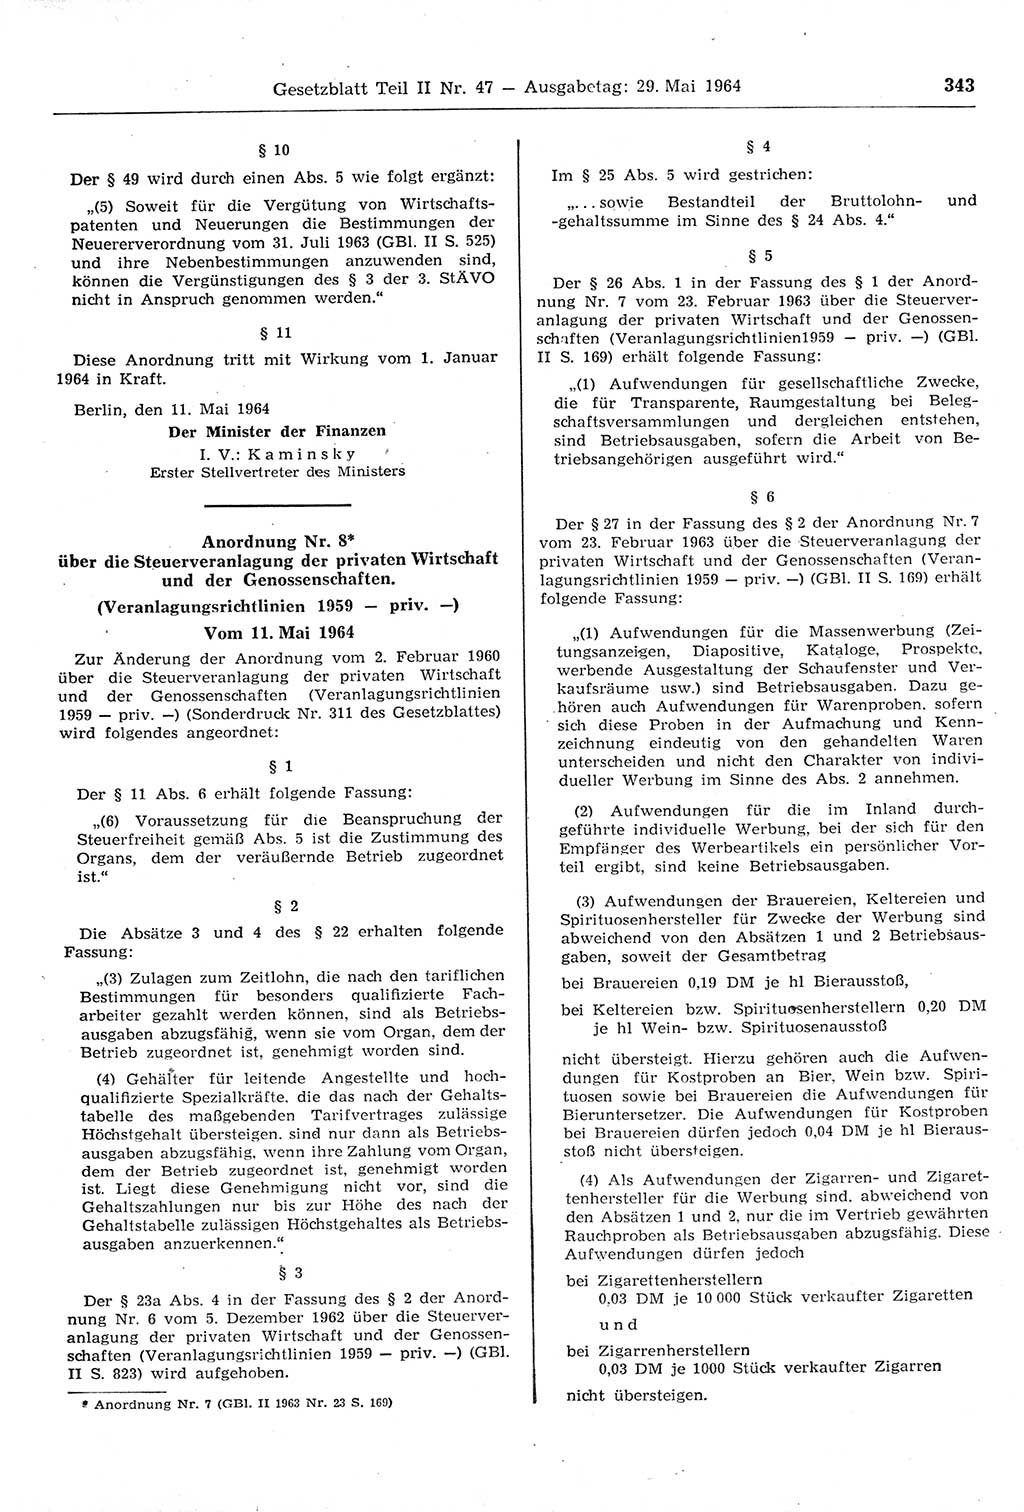 Gesetzblatt (GBl.) der Deutschen Demokratischen Republik (DDR) Teil ⅠⅠ 1964, Seite 343 (GBl. DDR ⅠⅠ 1964, S. 343)